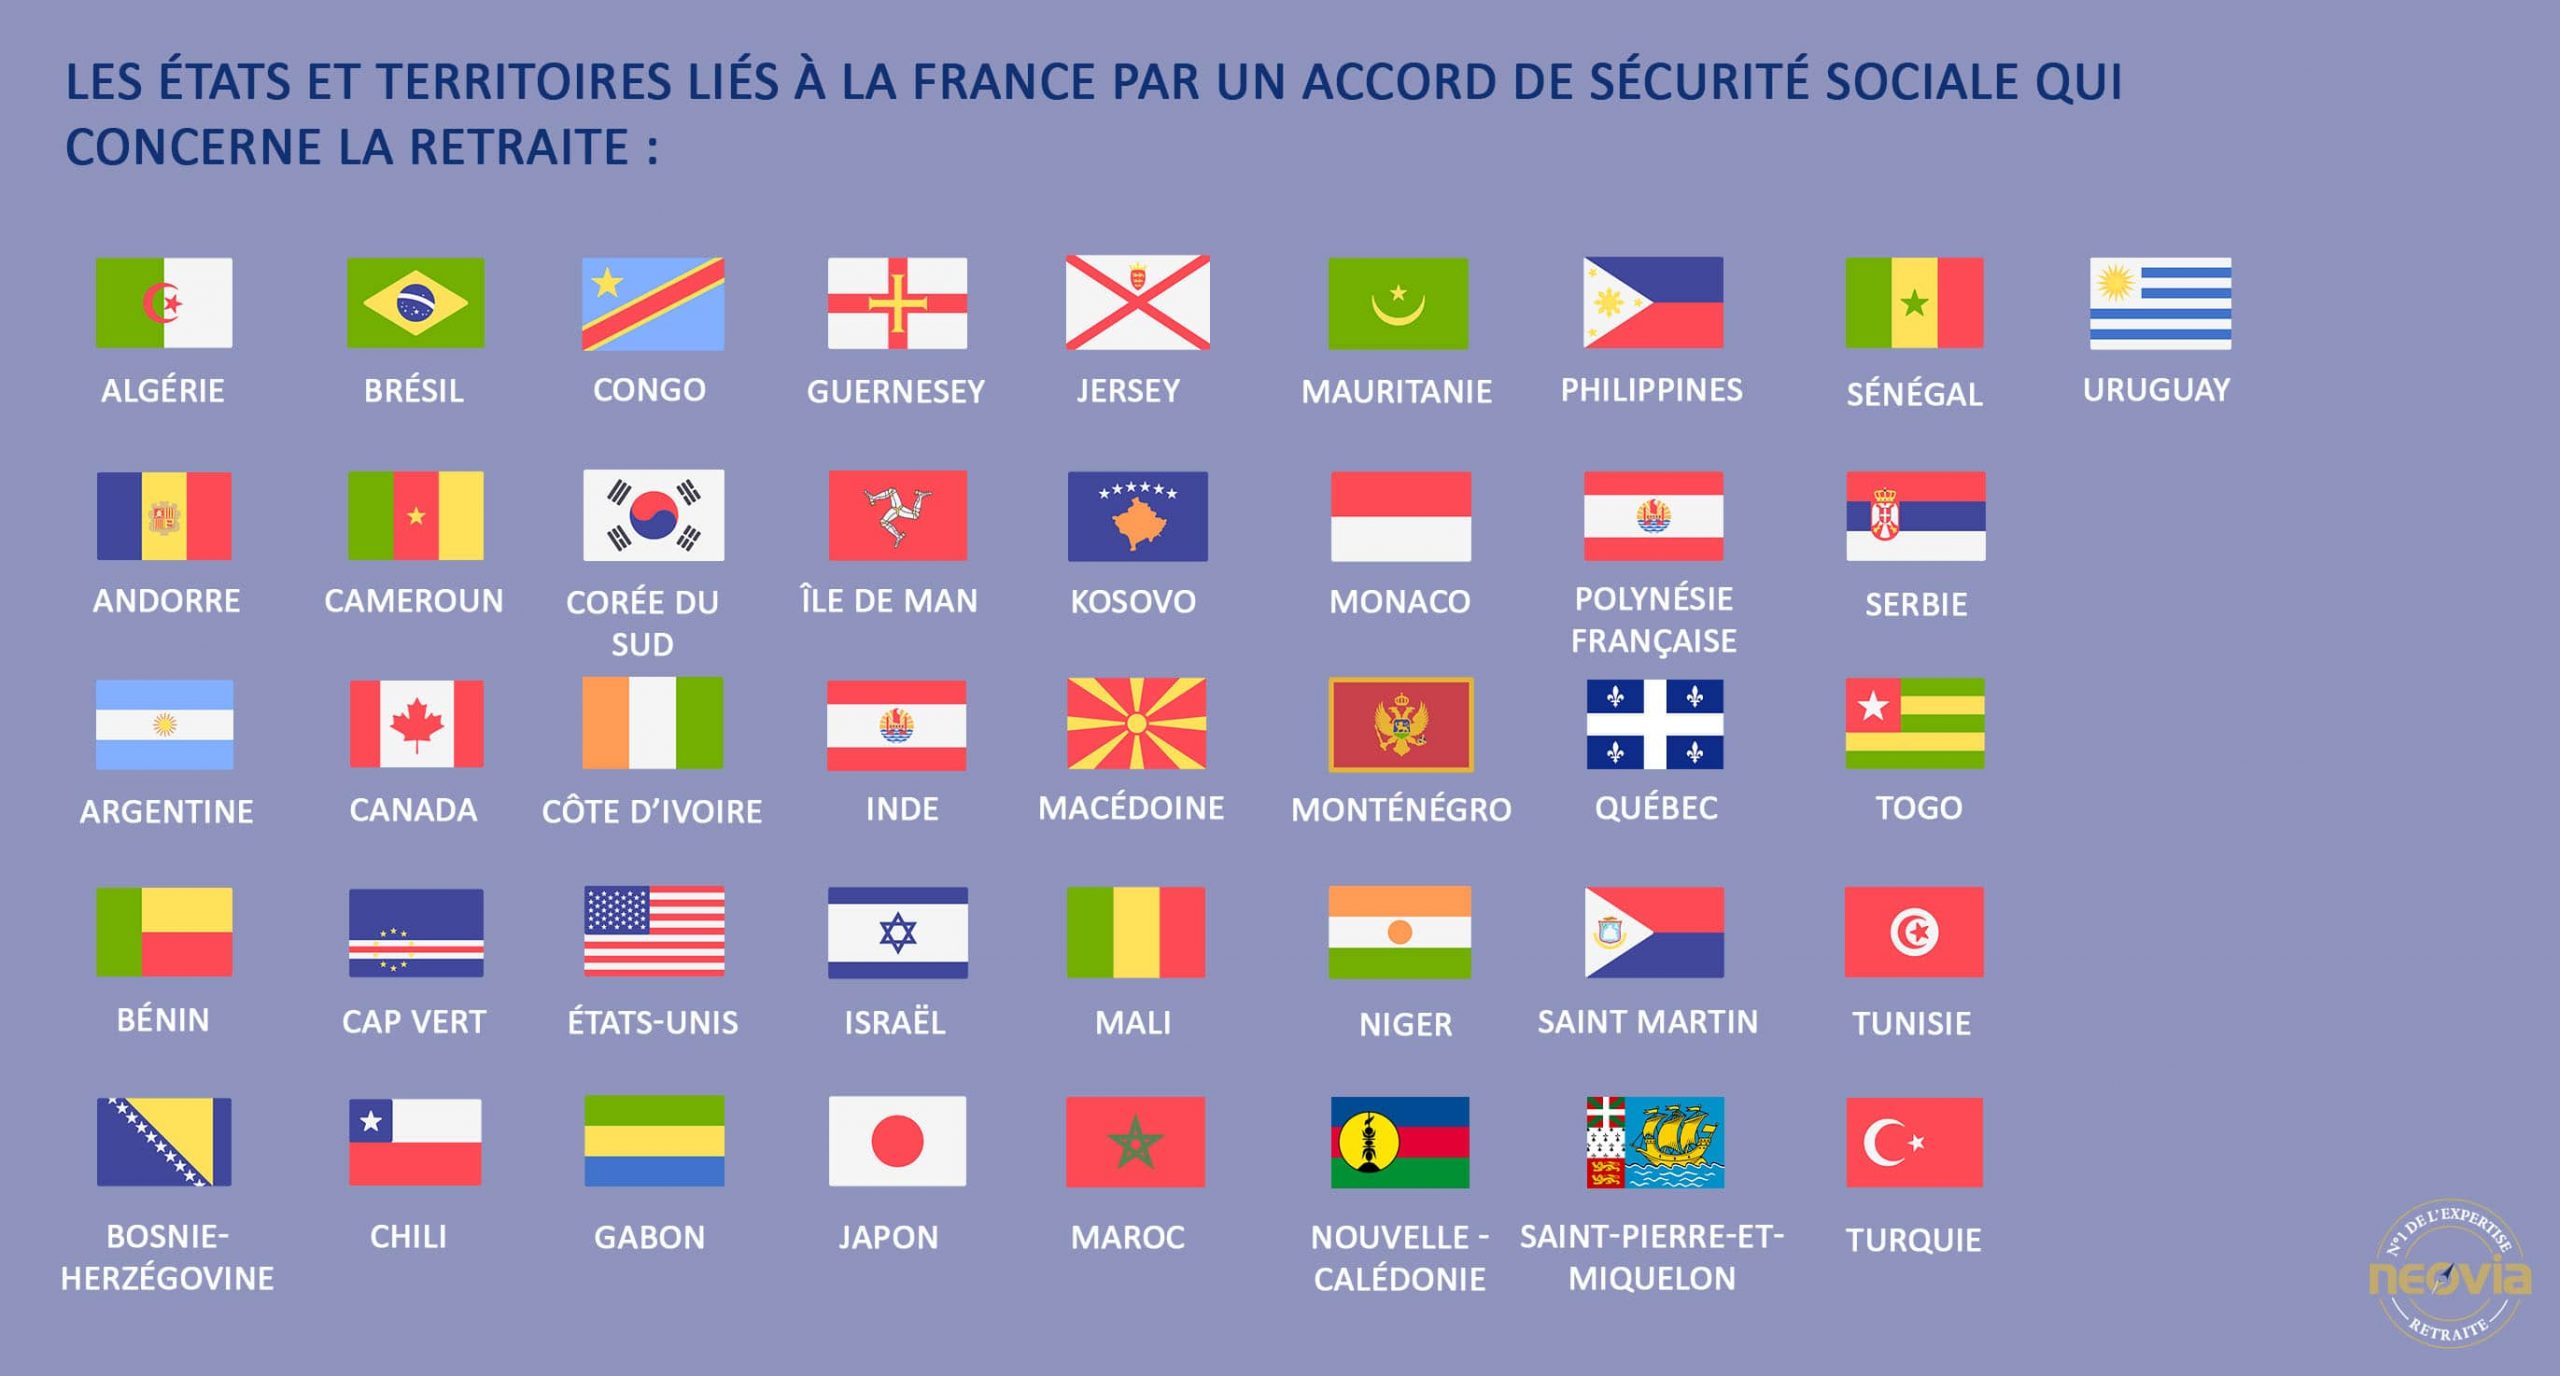 Les Etats et territoires liés à la France par un accord de sécurité sociale qui concerne la retraite